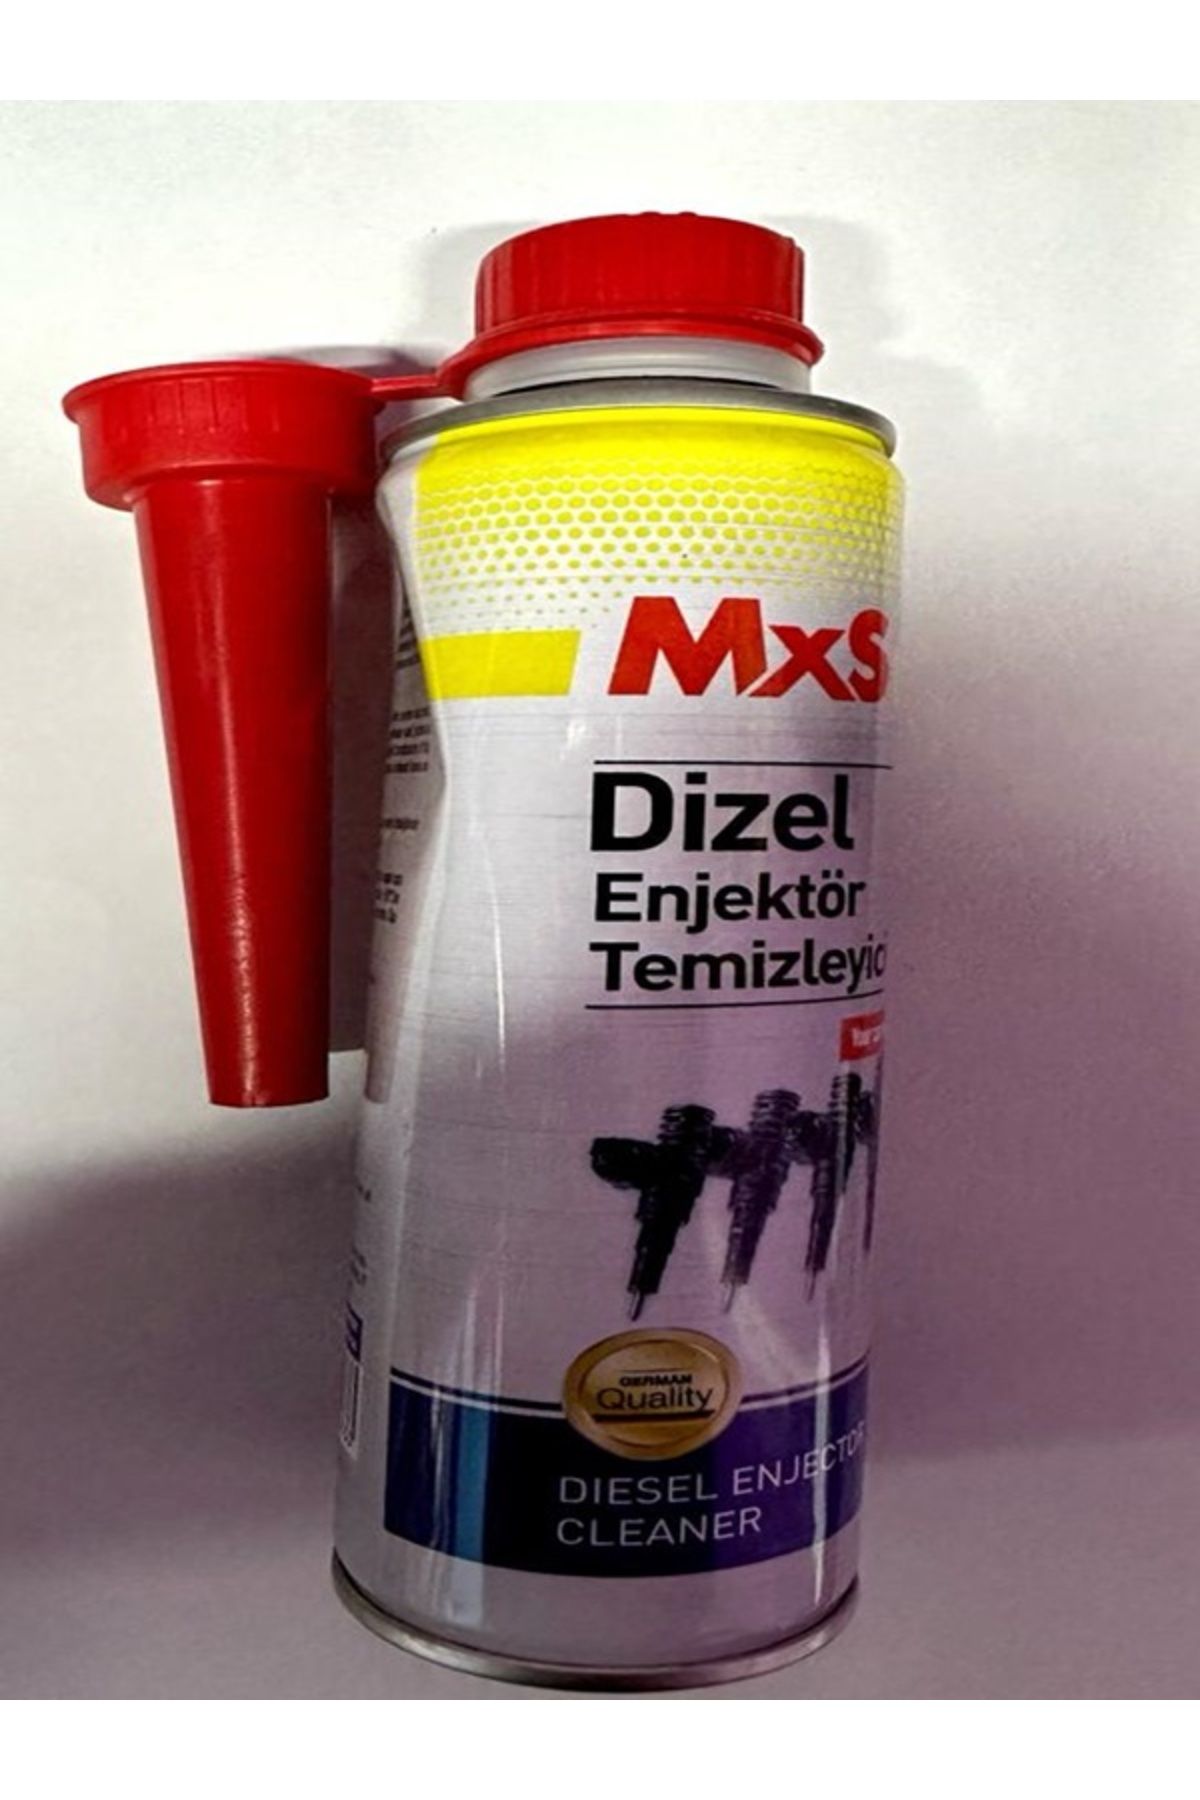 MxS Dizel Enjektör Temizleyici 300 ml.